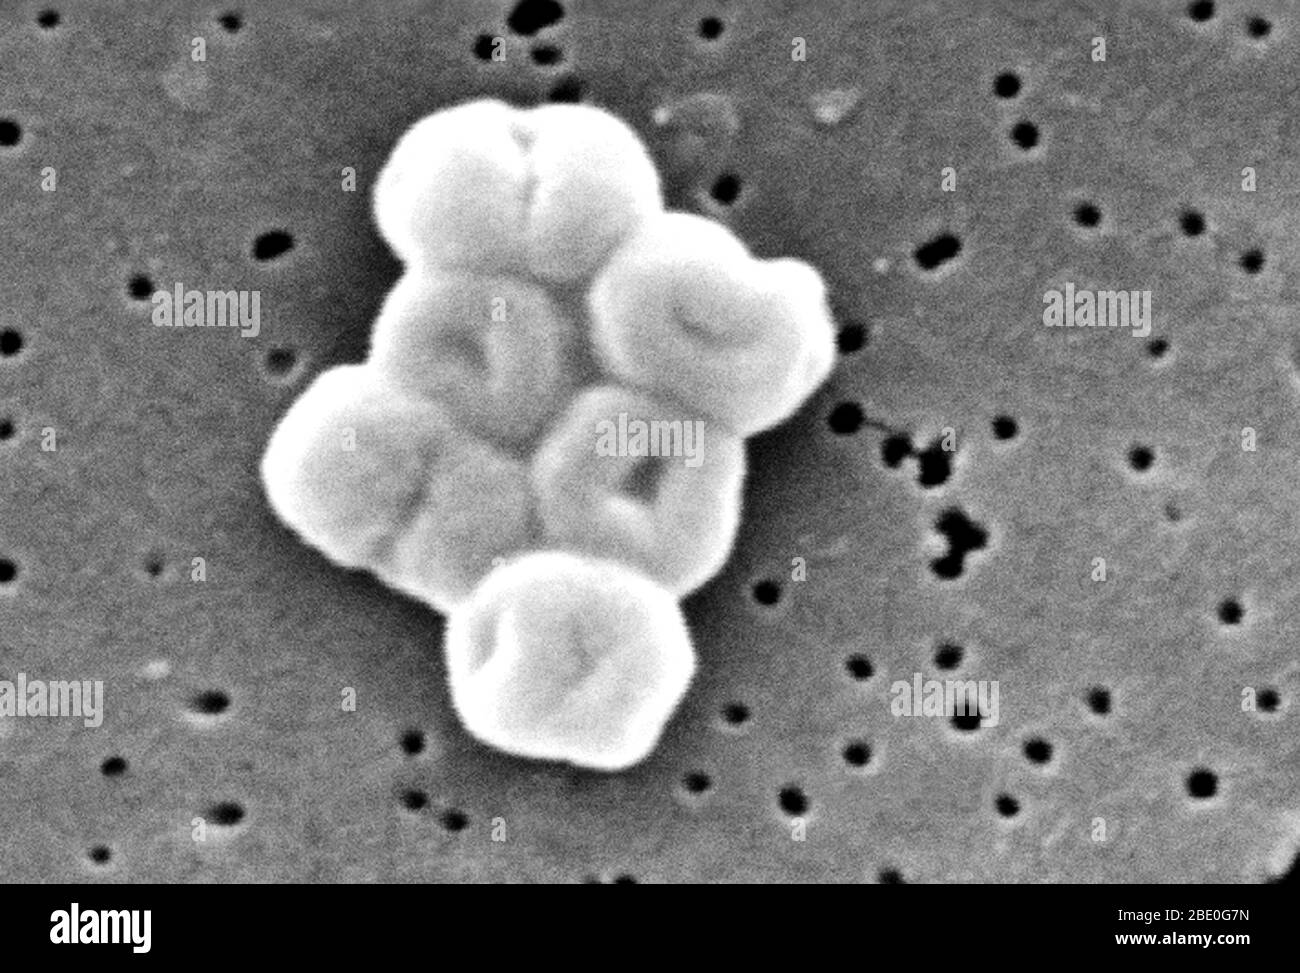 Questo SEM raffigura un gruppo molto ingrandito di batteri acinetobacter baumannii Gram-negativi, non-motile; Mag - 27600x. I membri del genere Acinetobacter sono verghe non mottili, di 1-1.5µm di diametro e di 1.5-2.5µm di lunghezza, diventando di forma sferica durante la loro fase stazionaria di crescita. Gli spinetobacter spp. Sono ampiamente distribuiti in natura, e sono normali flora sulla pelle. Alcuni membri del genere sono importanti perché sono una causa emergente di infezioni polmonari acquisite in ospedale, ad esempio polmonite, emopatiche e ferite. Foto Stock